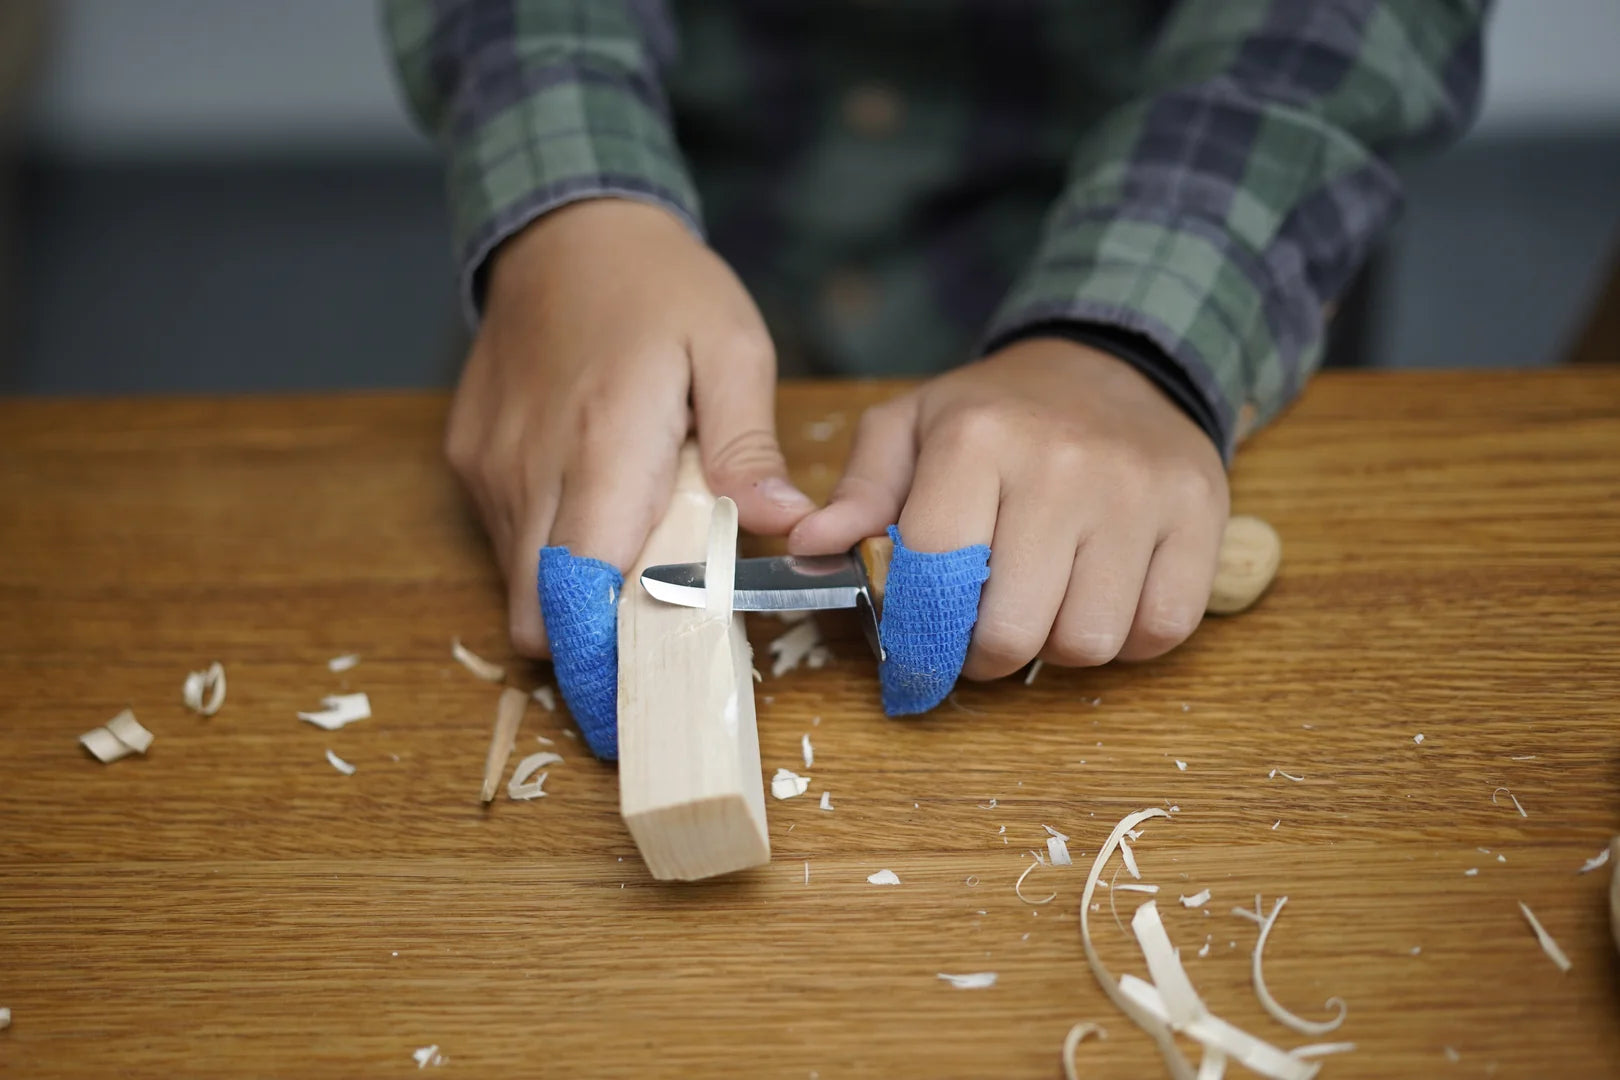 BeaverCraft Whittling Knife for Children and Beginners 49-C1kid